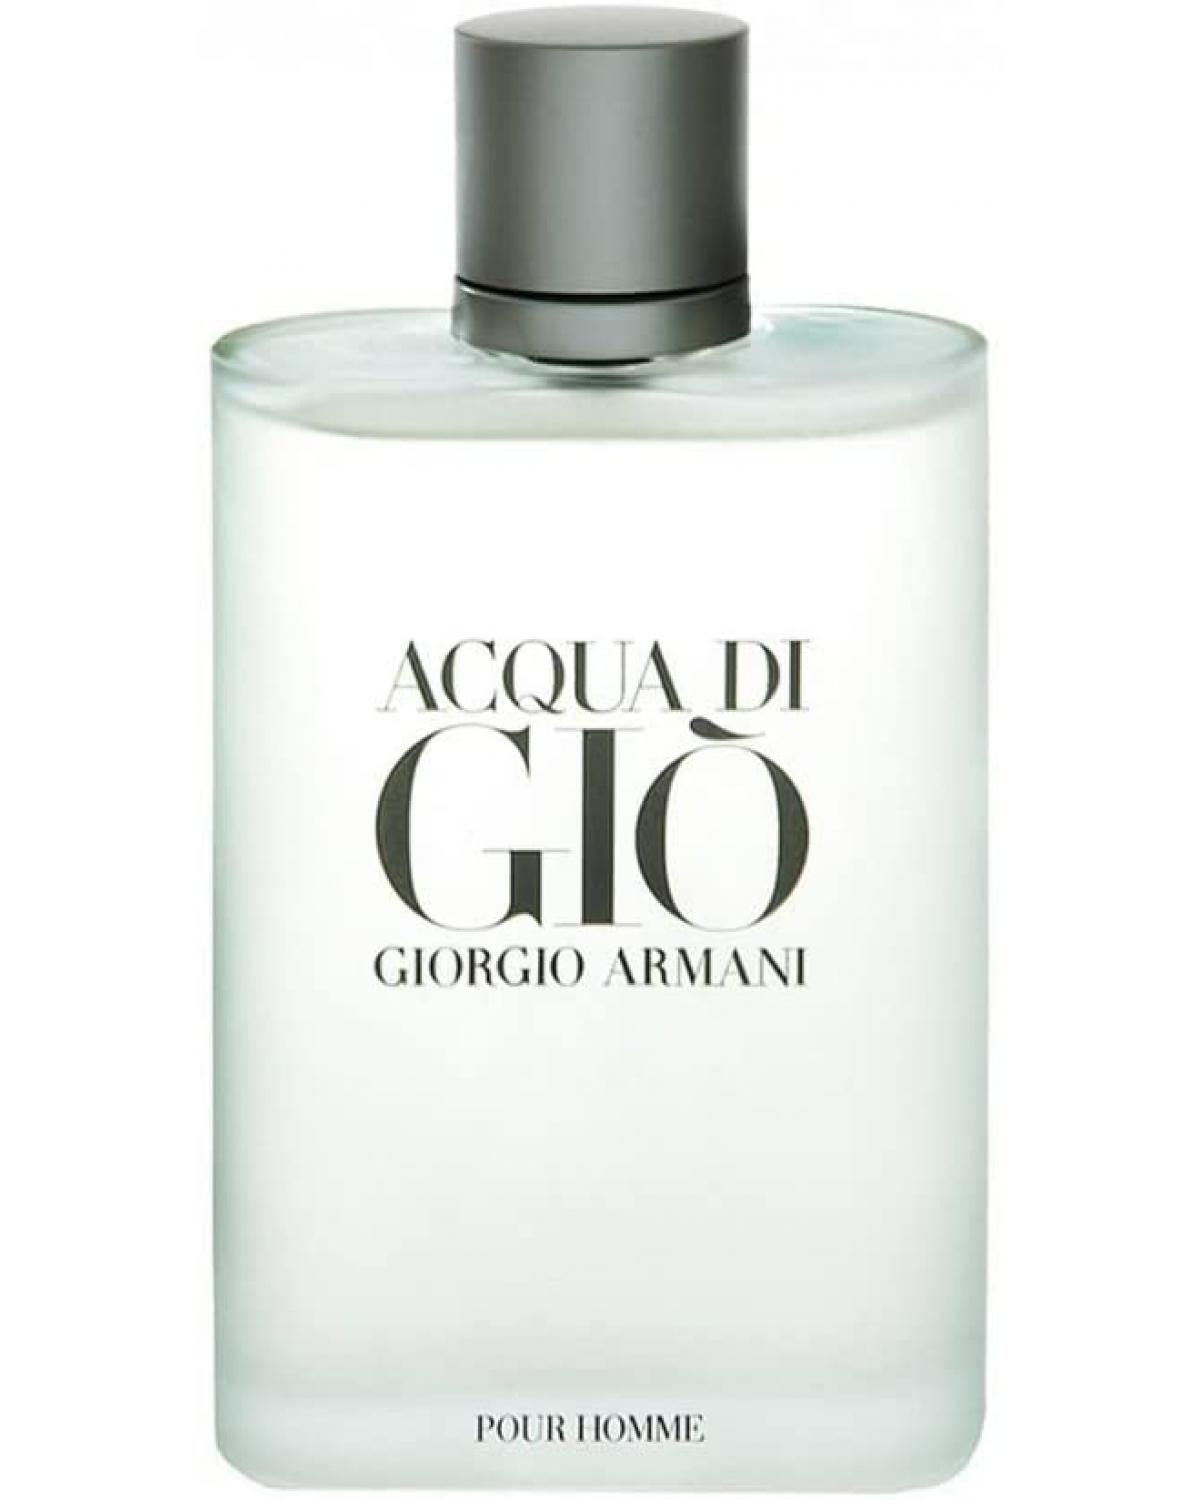 Acqua Di Giò Homme Giorgio Armani - Perfume Masculino - Eau de Toilette - 200ml